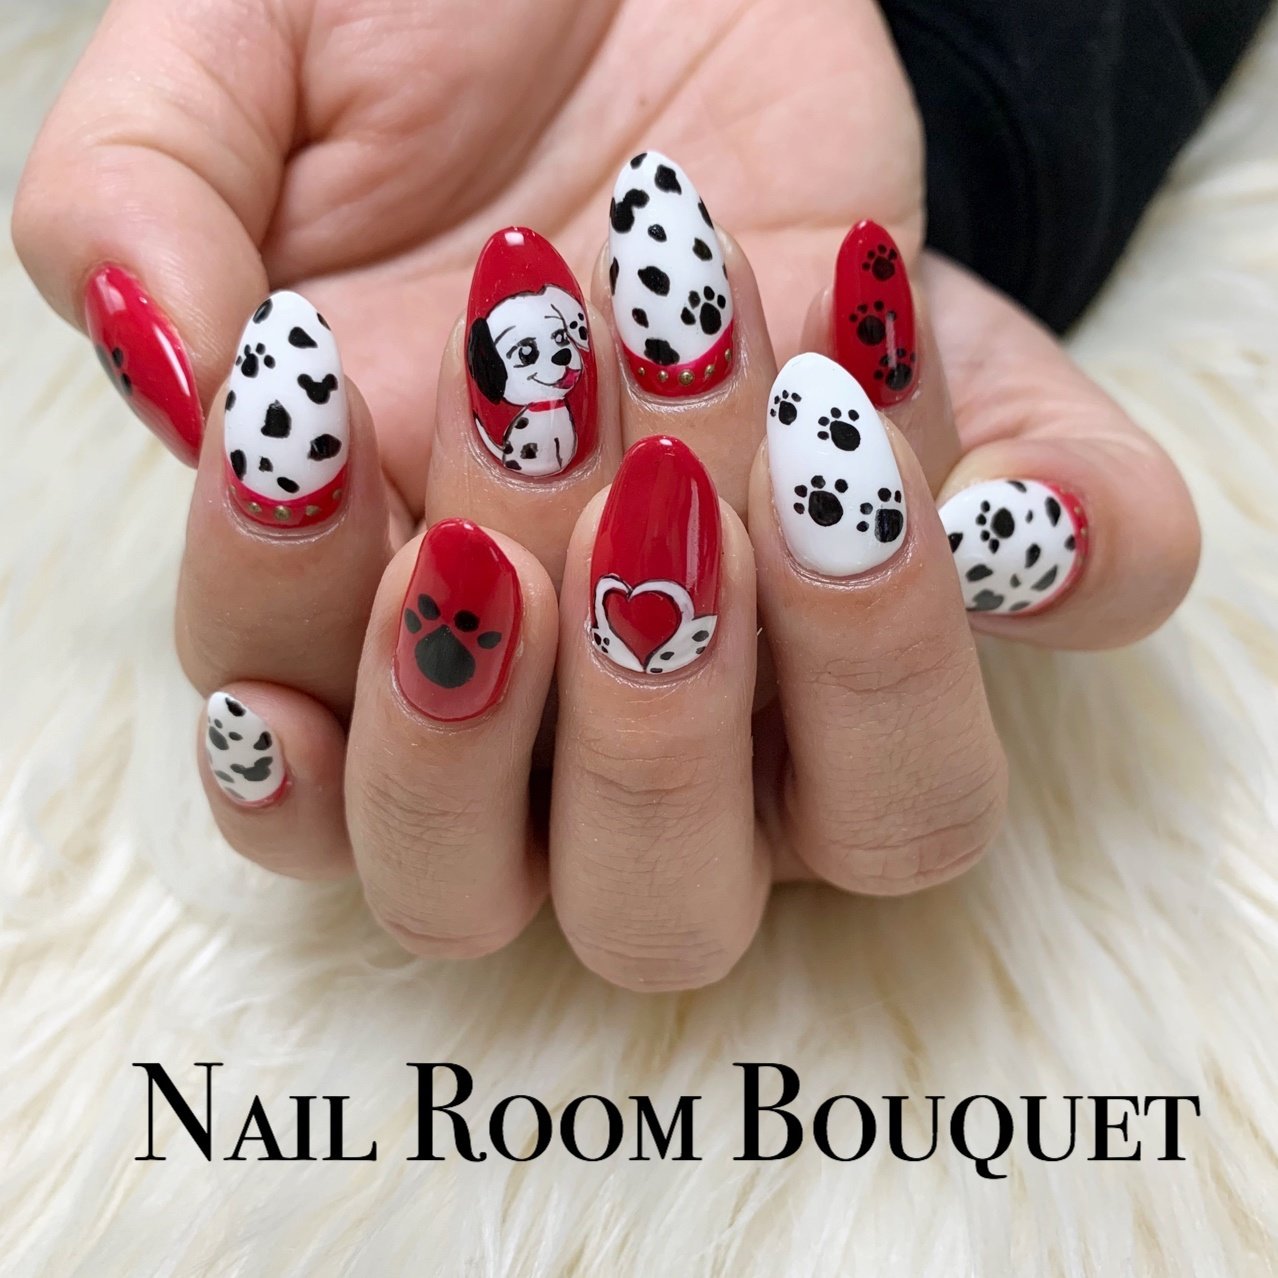 オールシーズン ハロウィン パーティー 女子会 ハンド Nail Room Bouquetのネイルデザイン No 3837021 ネイルブック